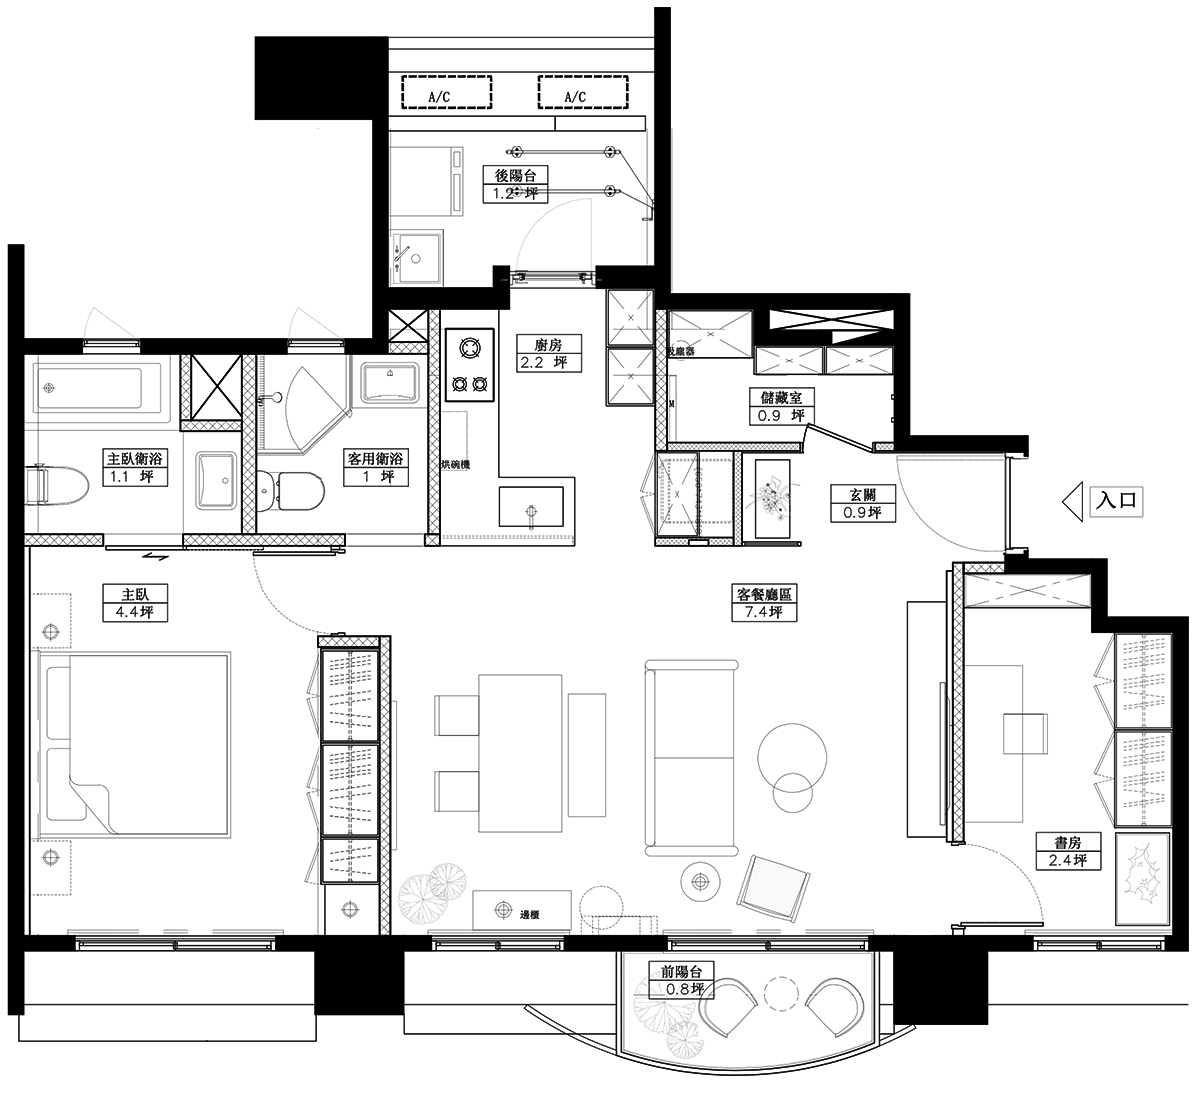 沐光植境設計,小公寓設計,公寓設計案例,公寓設計,沐光植境設計,60㎡公寓設計,最小宅